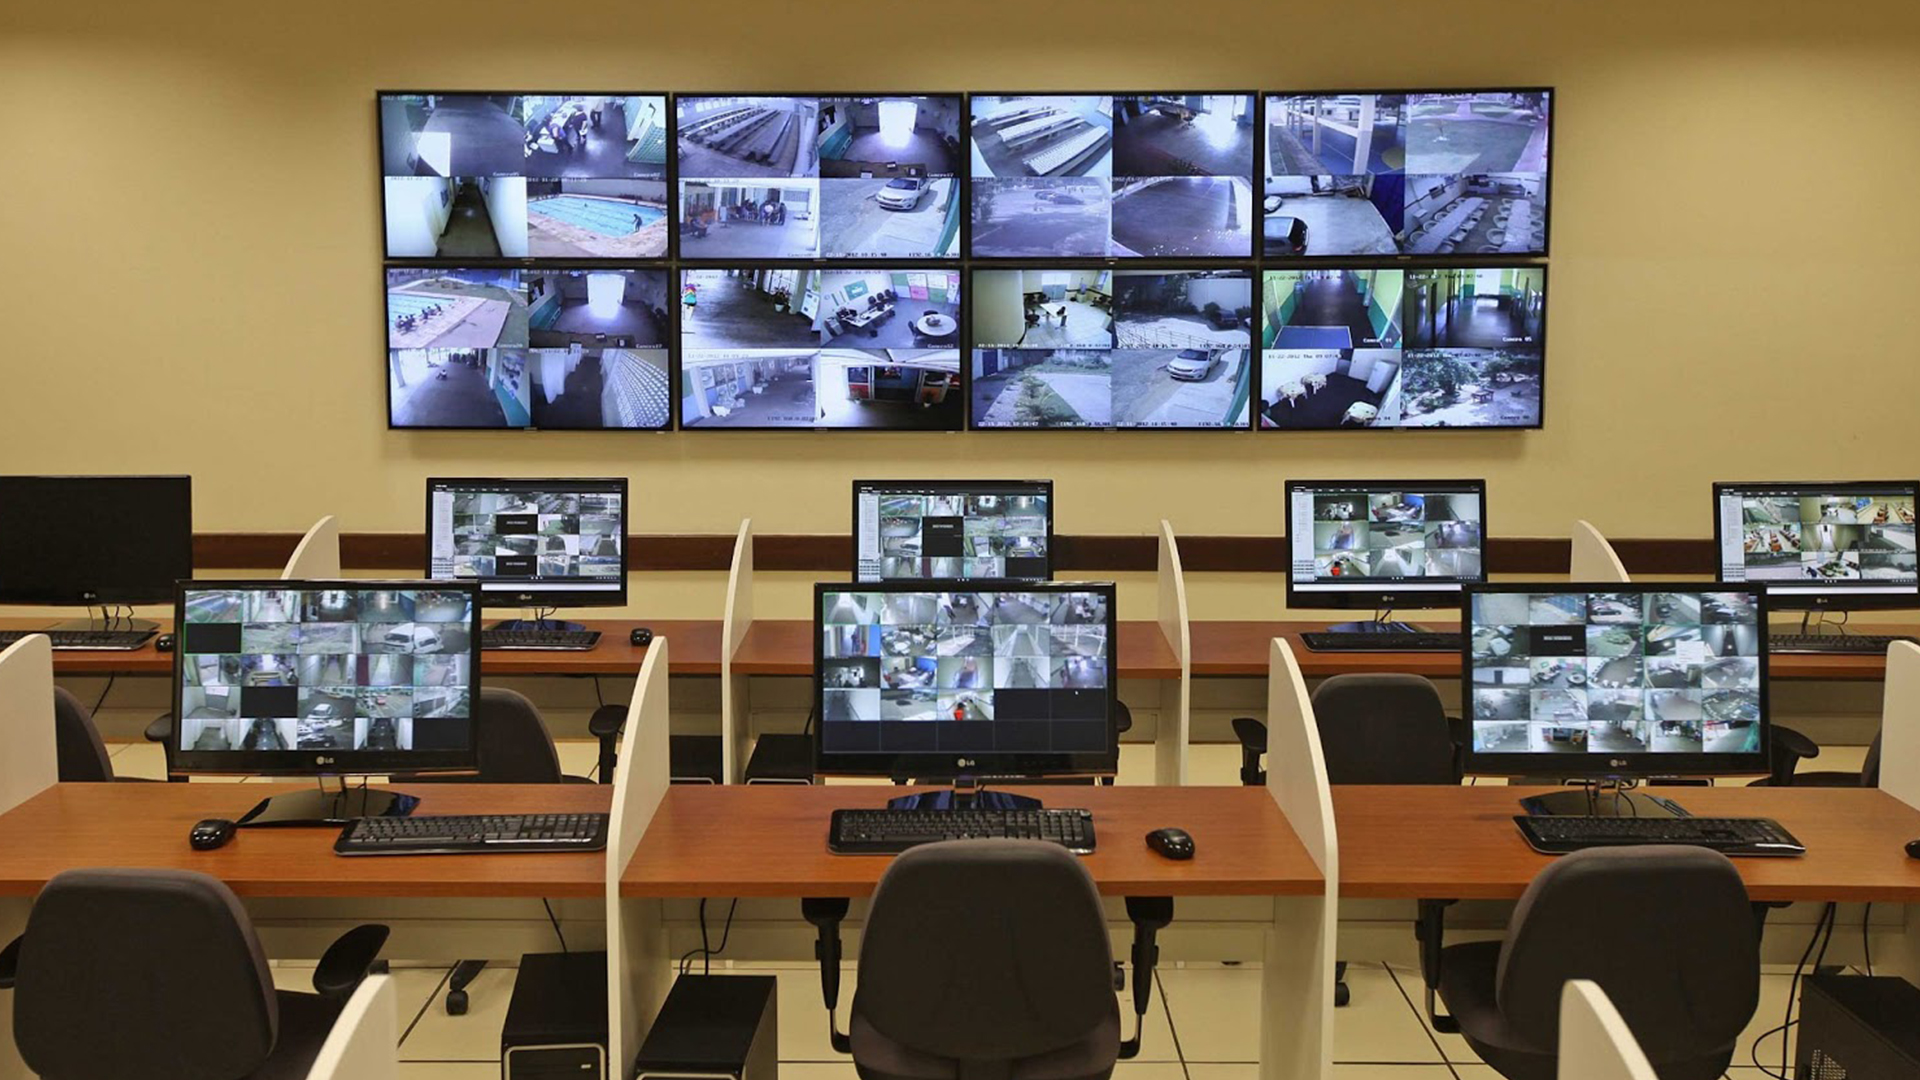 Imagem de uma sala de monitoramento com vários computadores em mesas dispostas em fileiras.